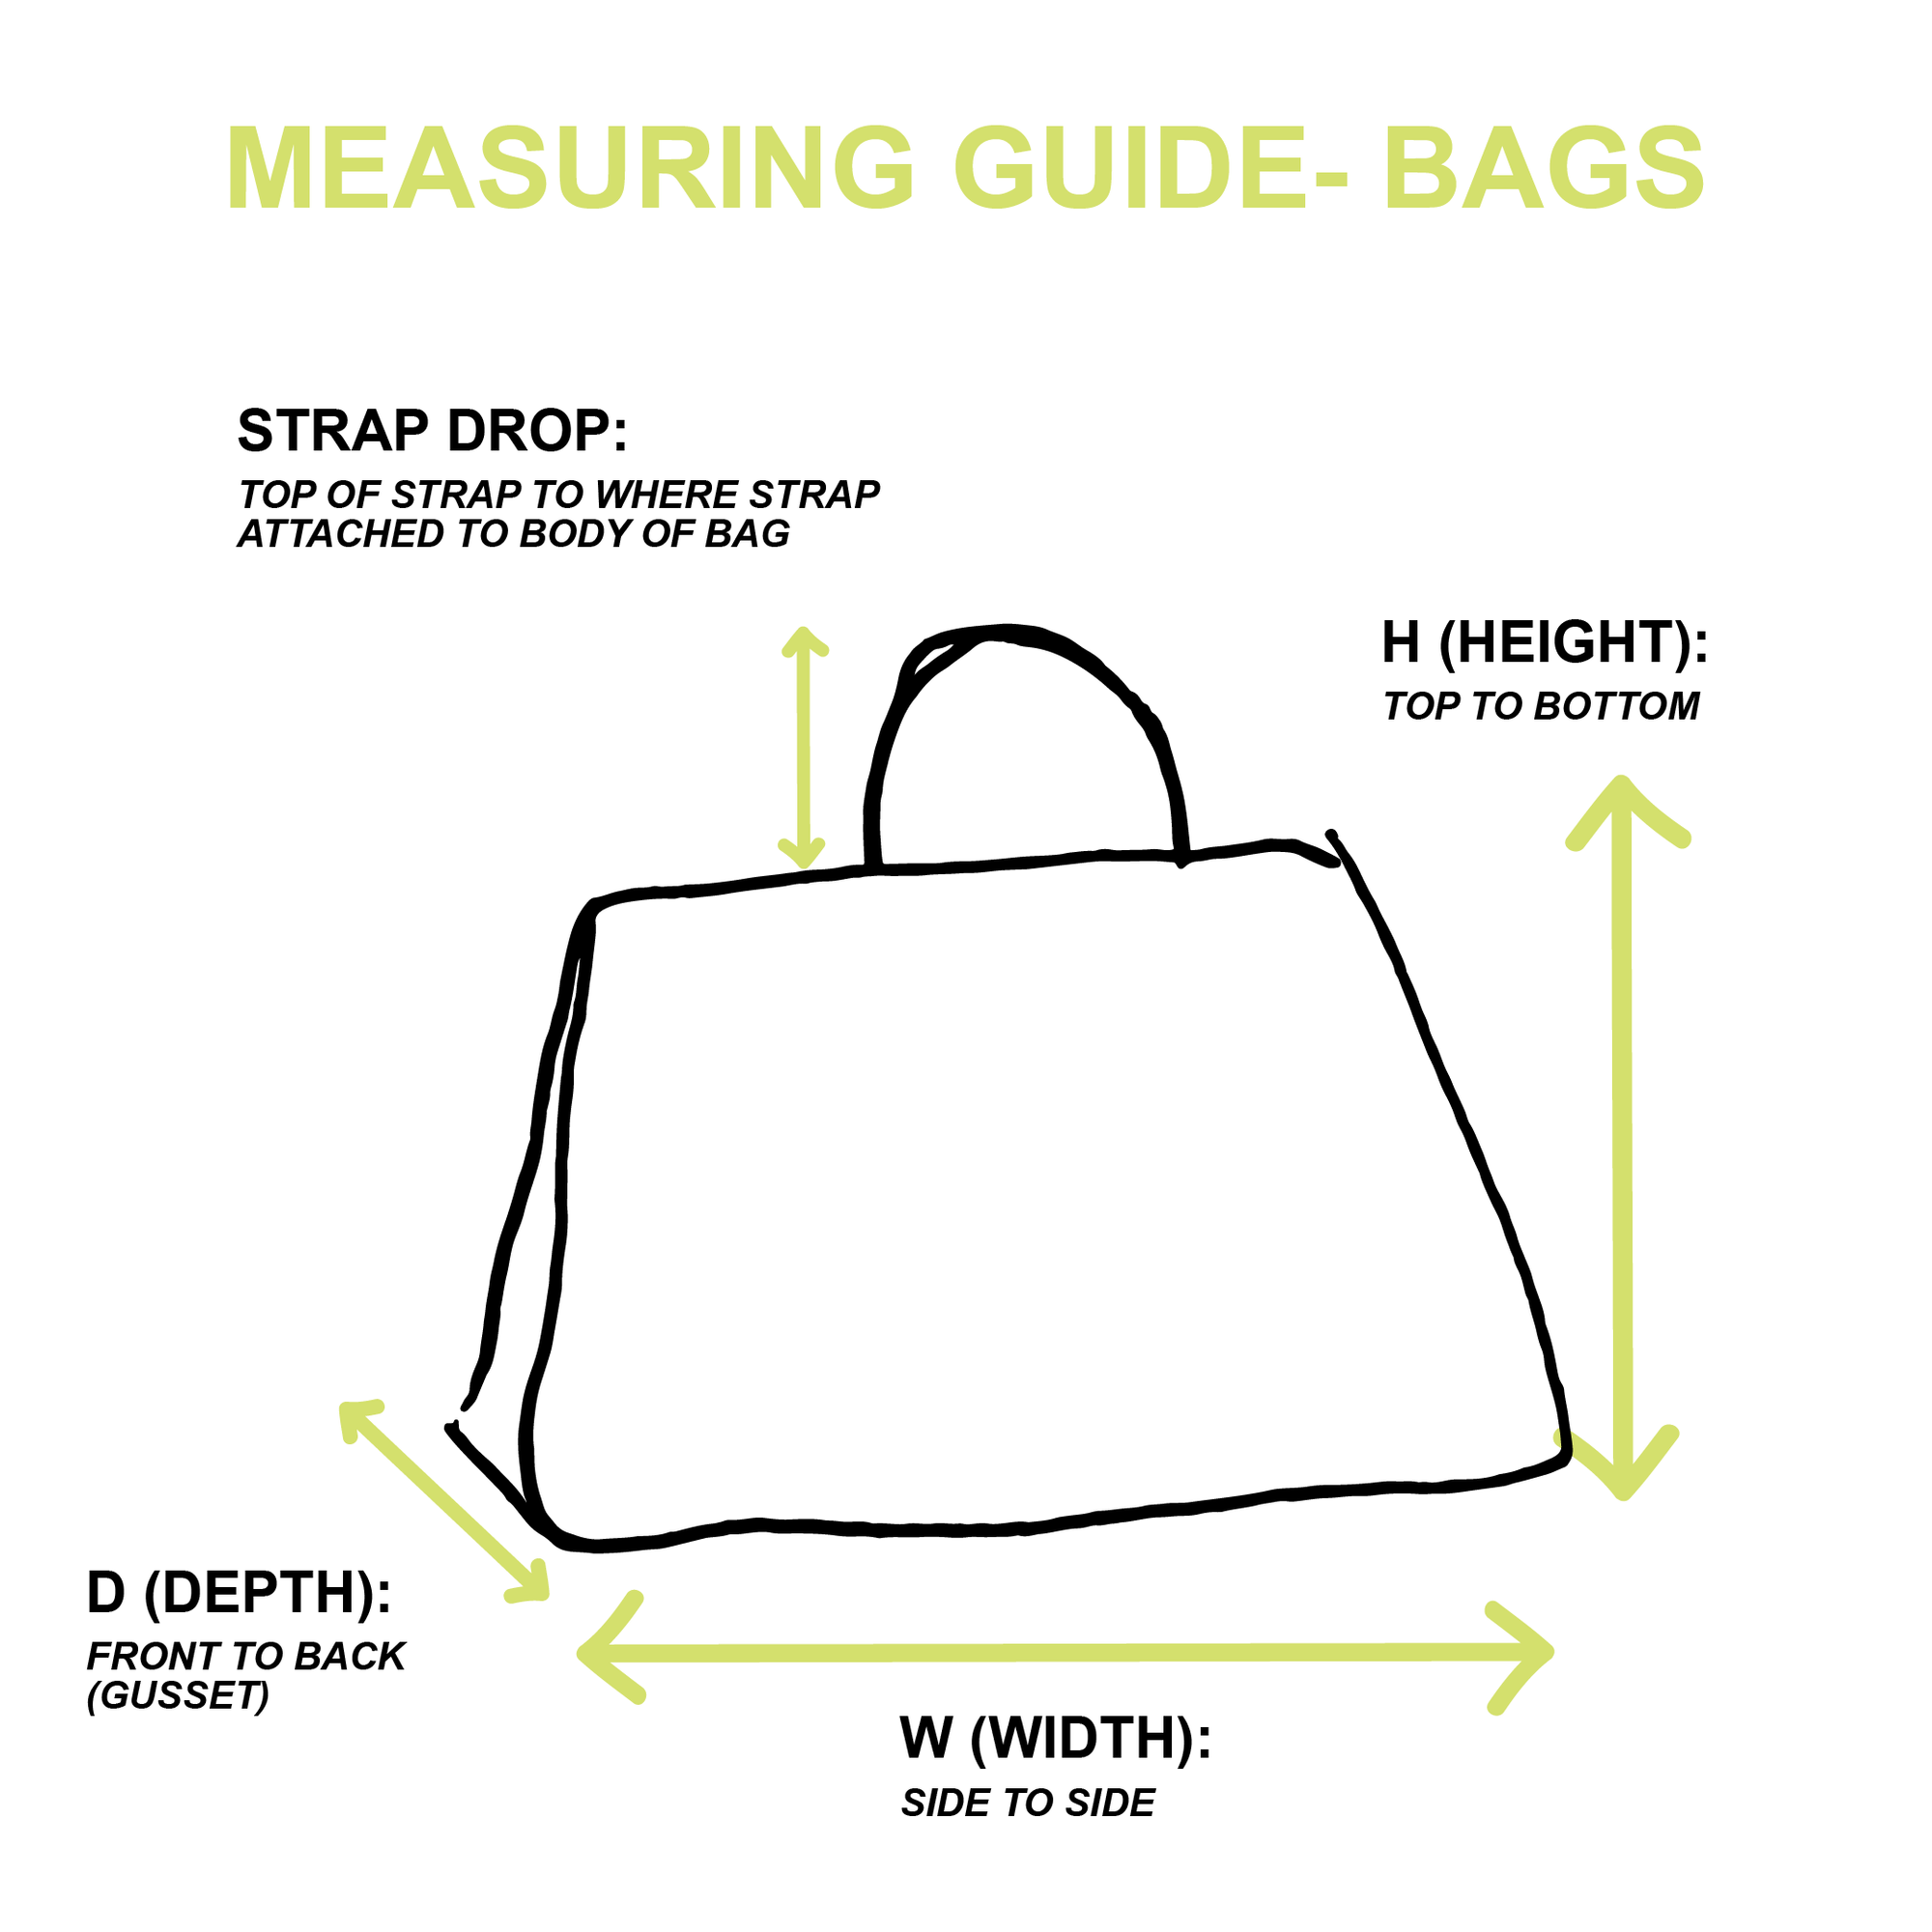 Prada White Logo Shoulder Bag - Handbags